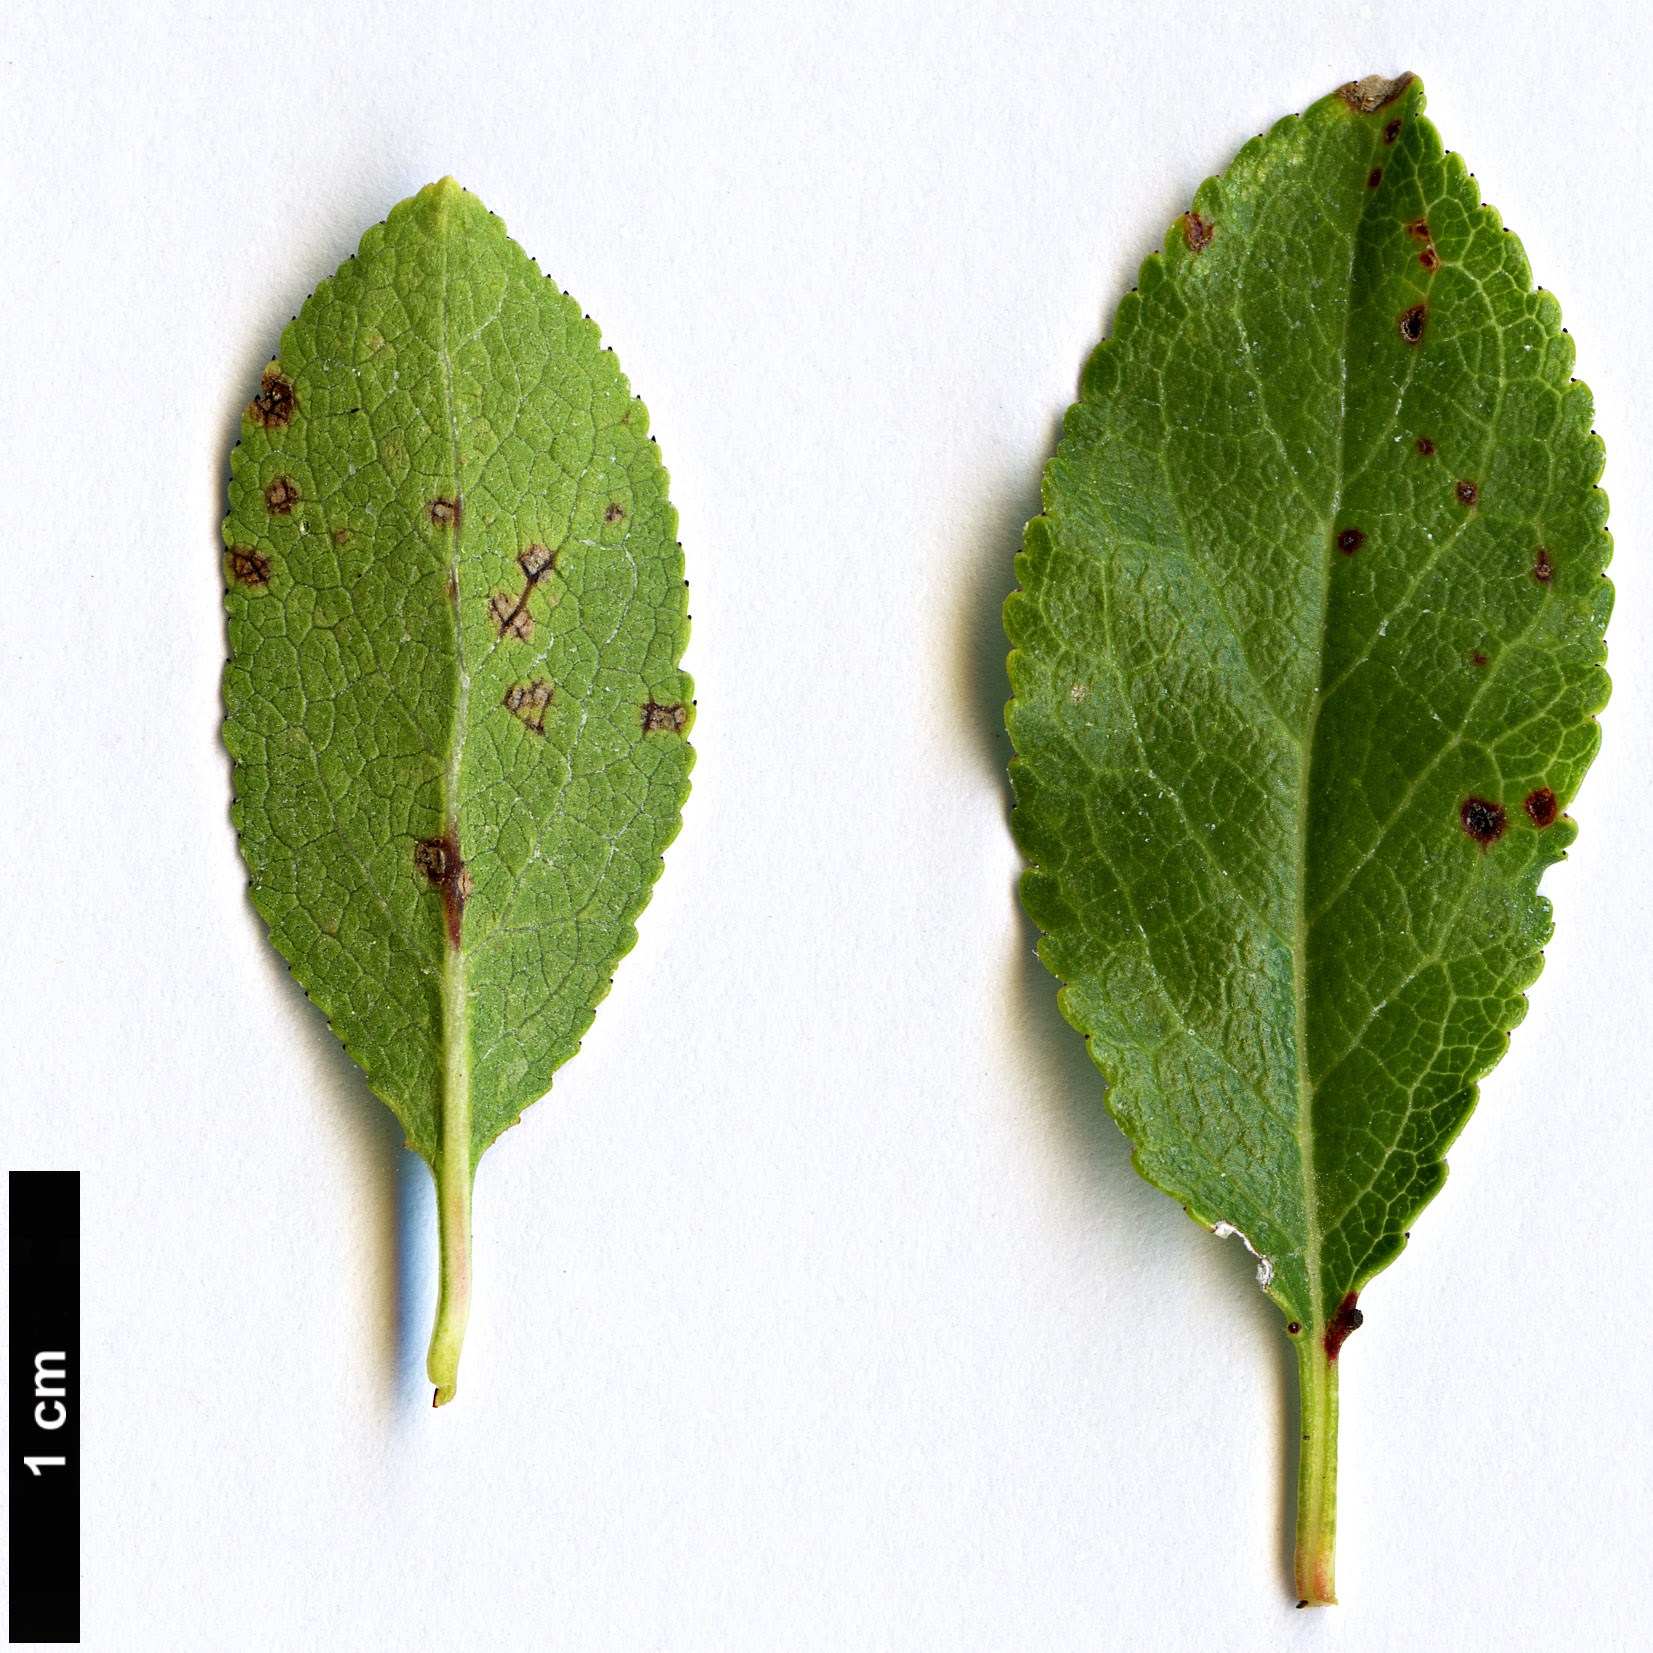 High resolution image: Family: Rosaceae - Genus: Prunus - Taxon: cocomilia